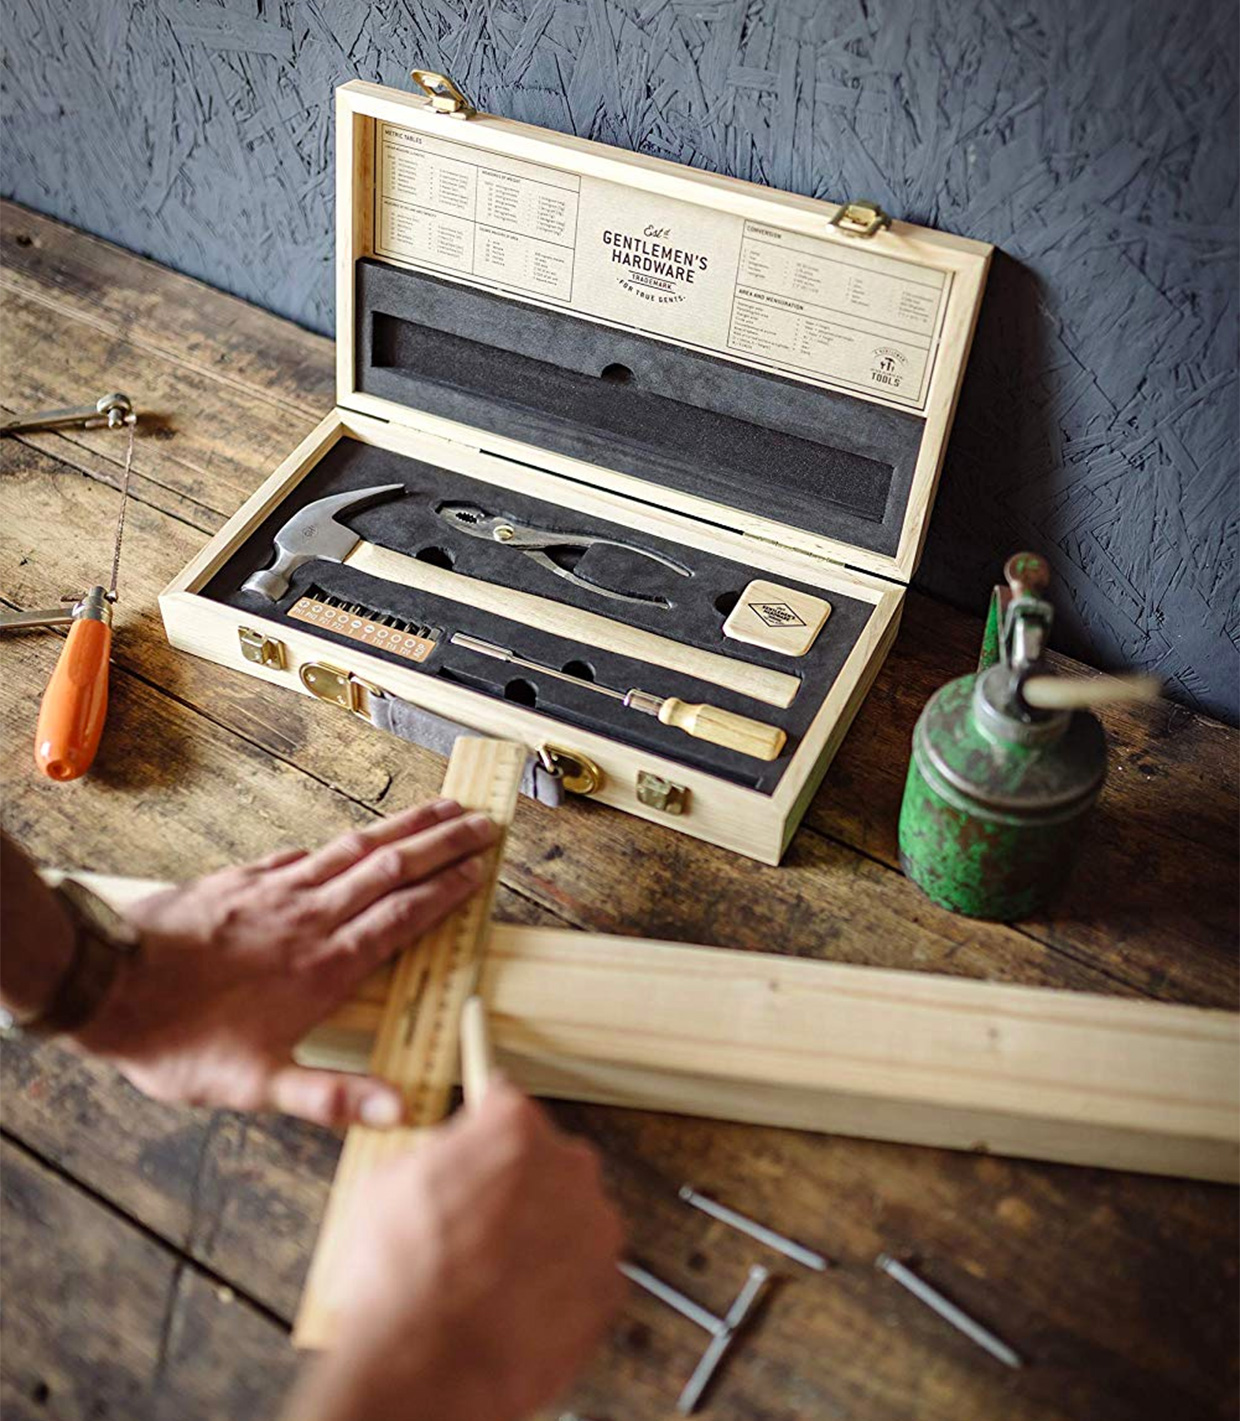 Handyman Tool Kit